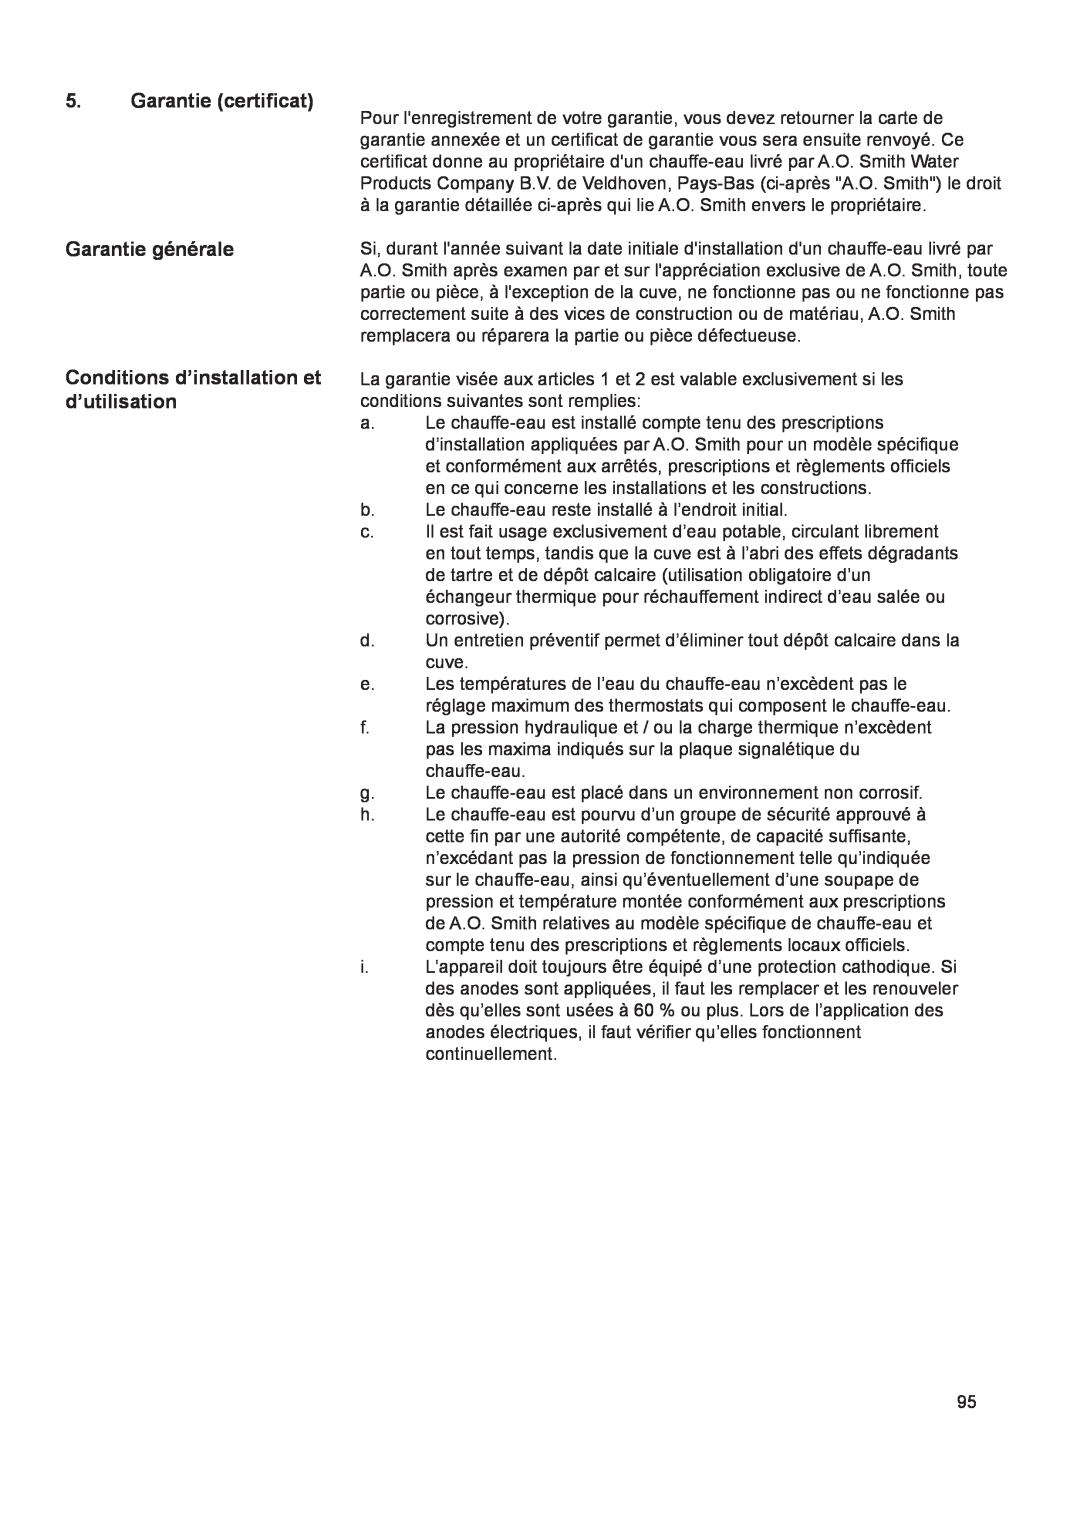 A.O. Smith 290 service manual Garantie certificat, Garantie générale, Conditions d’installation et d’utilisation 